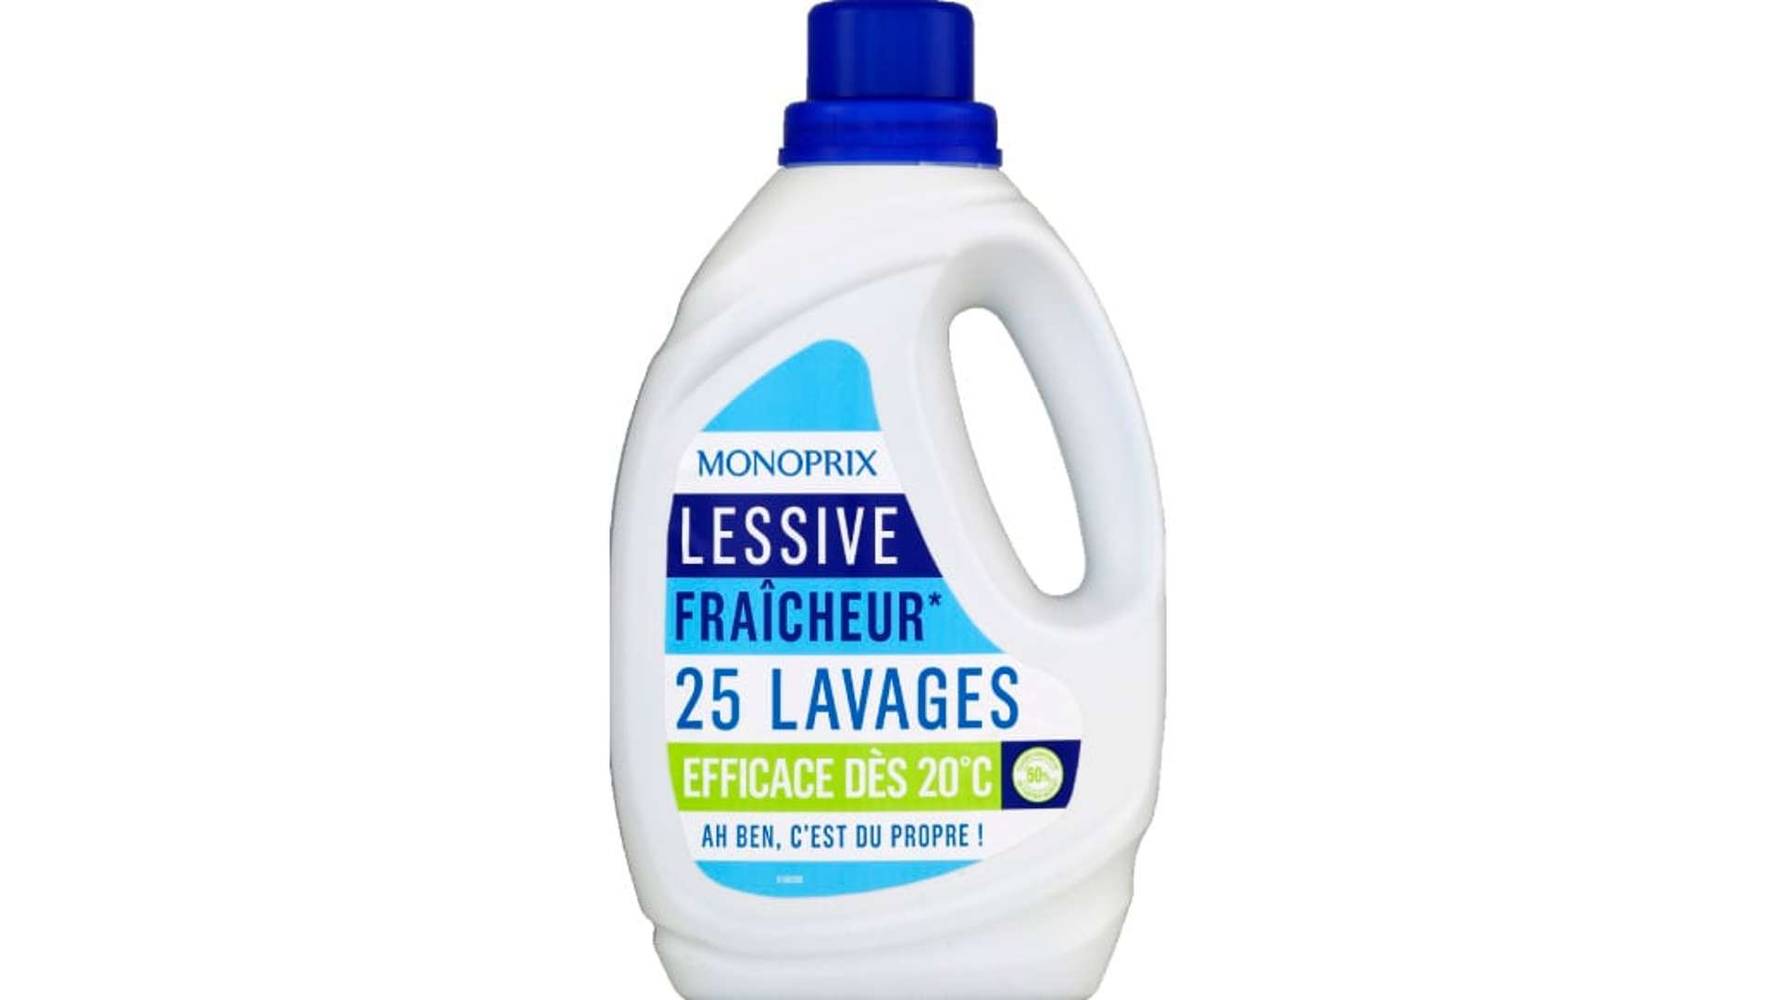 Monoprix Lessive Fraicheur 25 Lavages La bouteille de 1,25l